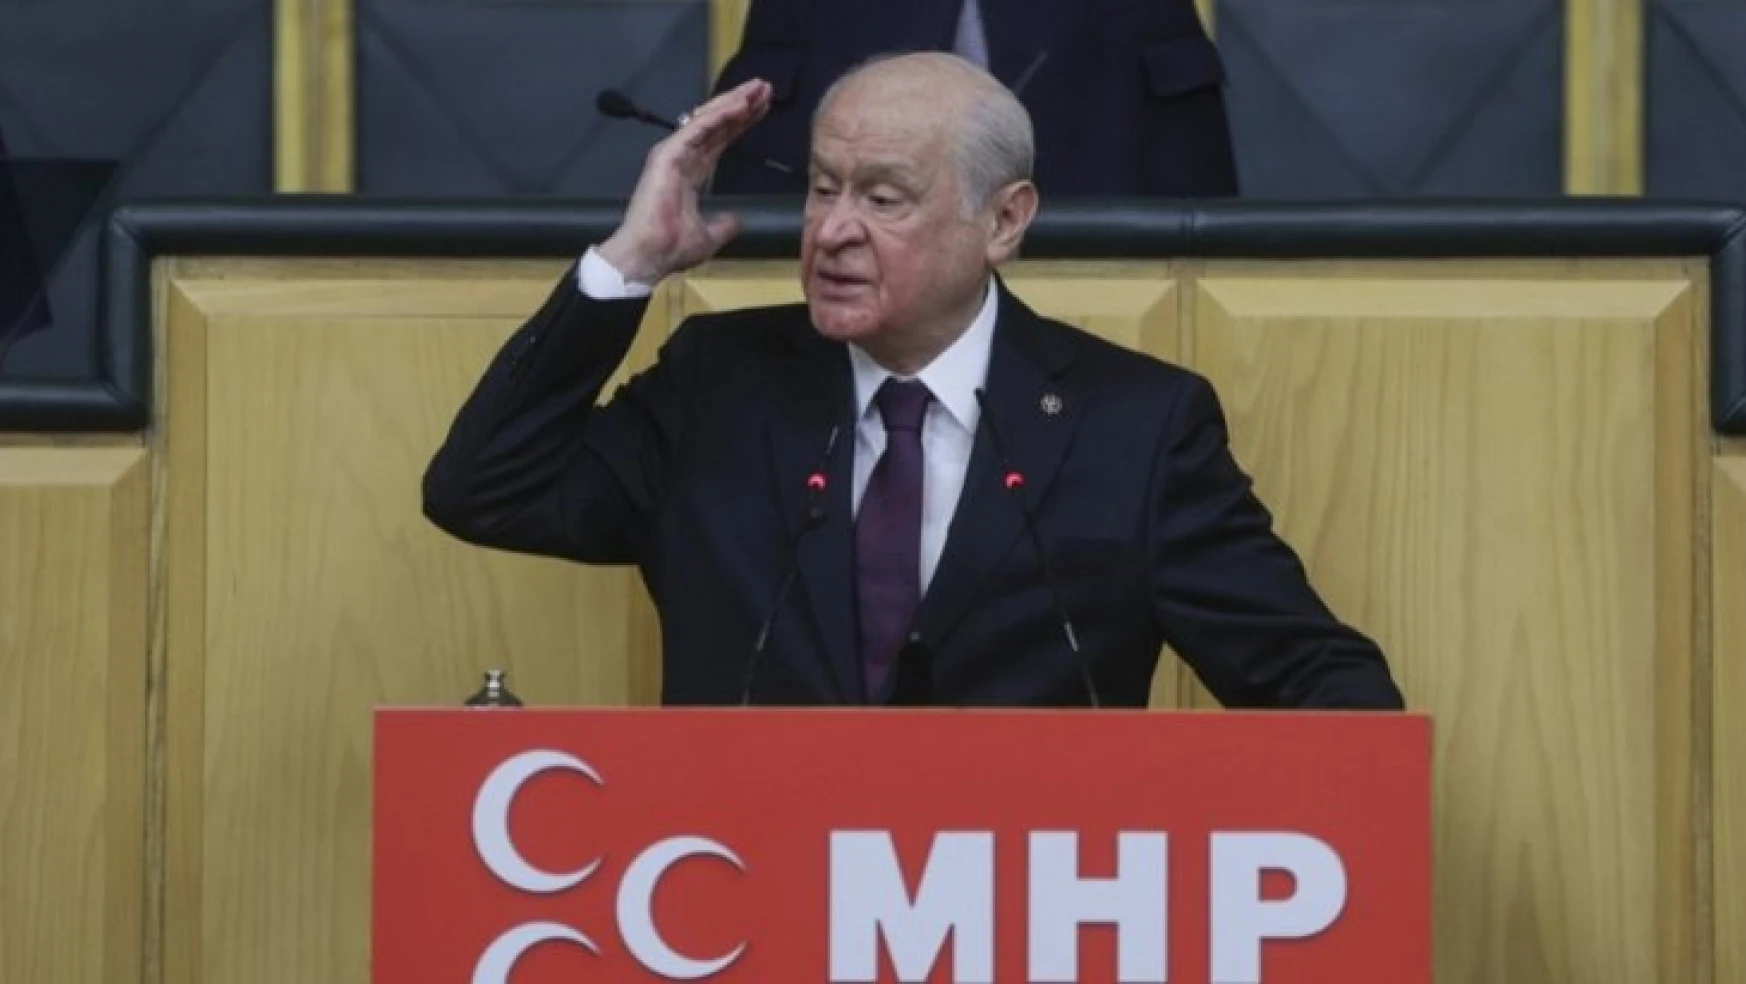 MHP Lideri Devlet Bahçeli, partisinin grup toplantısında önemli açıklamalarda bulundu.